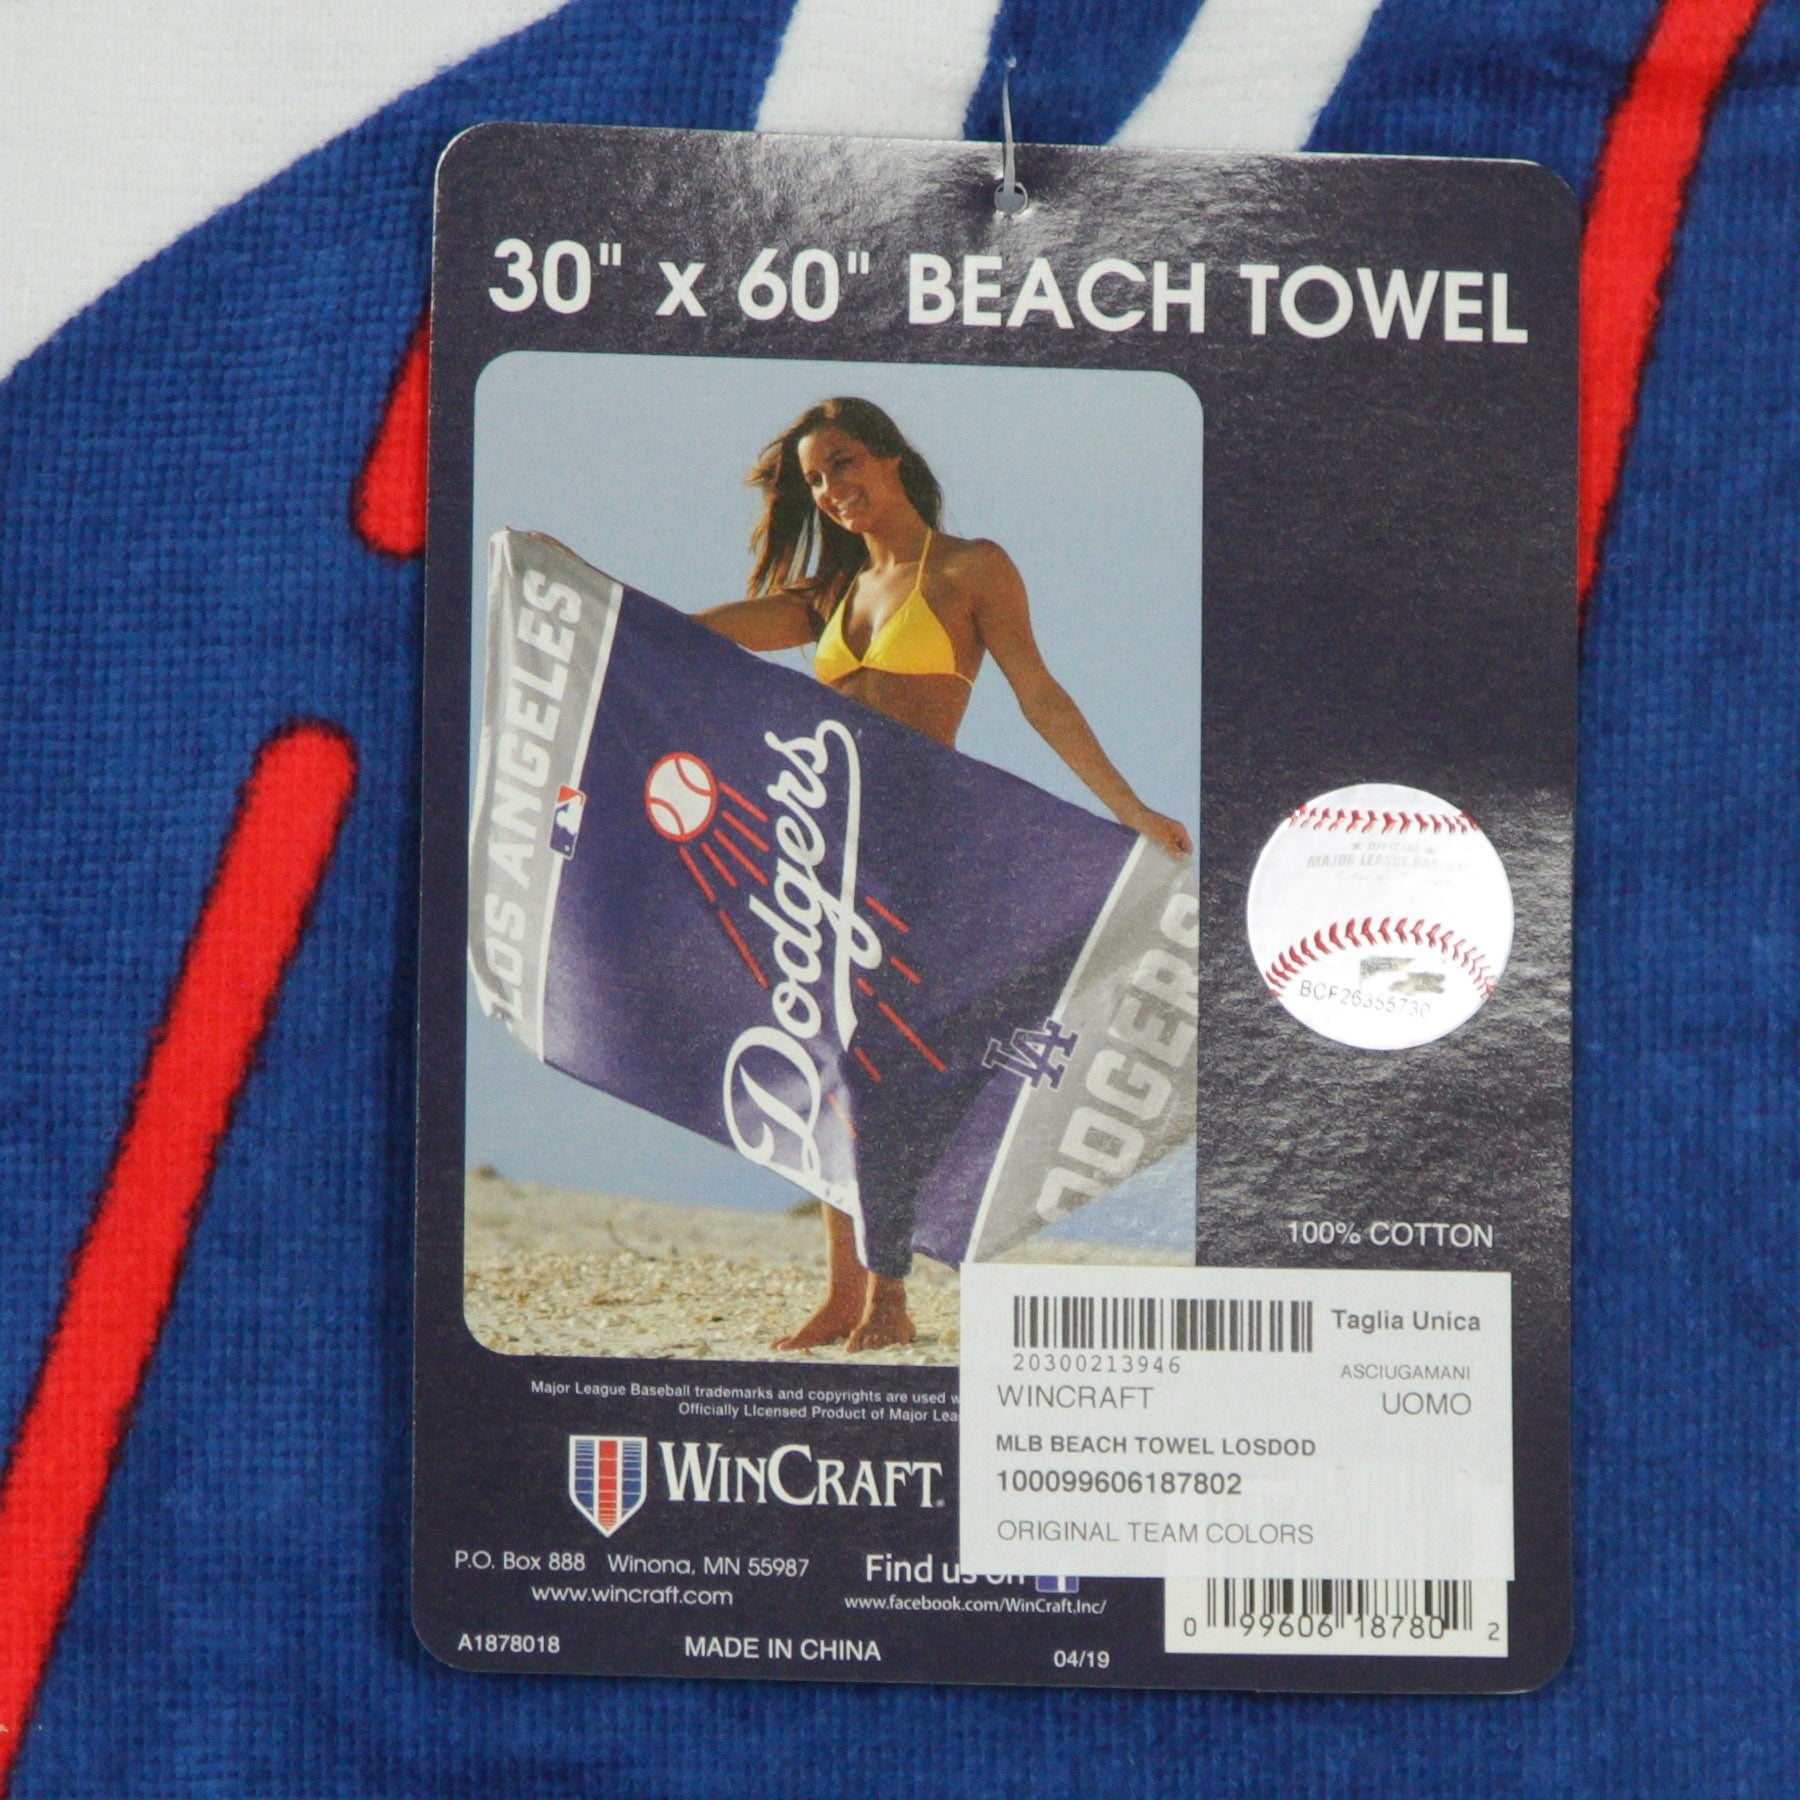 Wincraft, Asciugamano Uomo Mlb Beach Towel Losdod, 